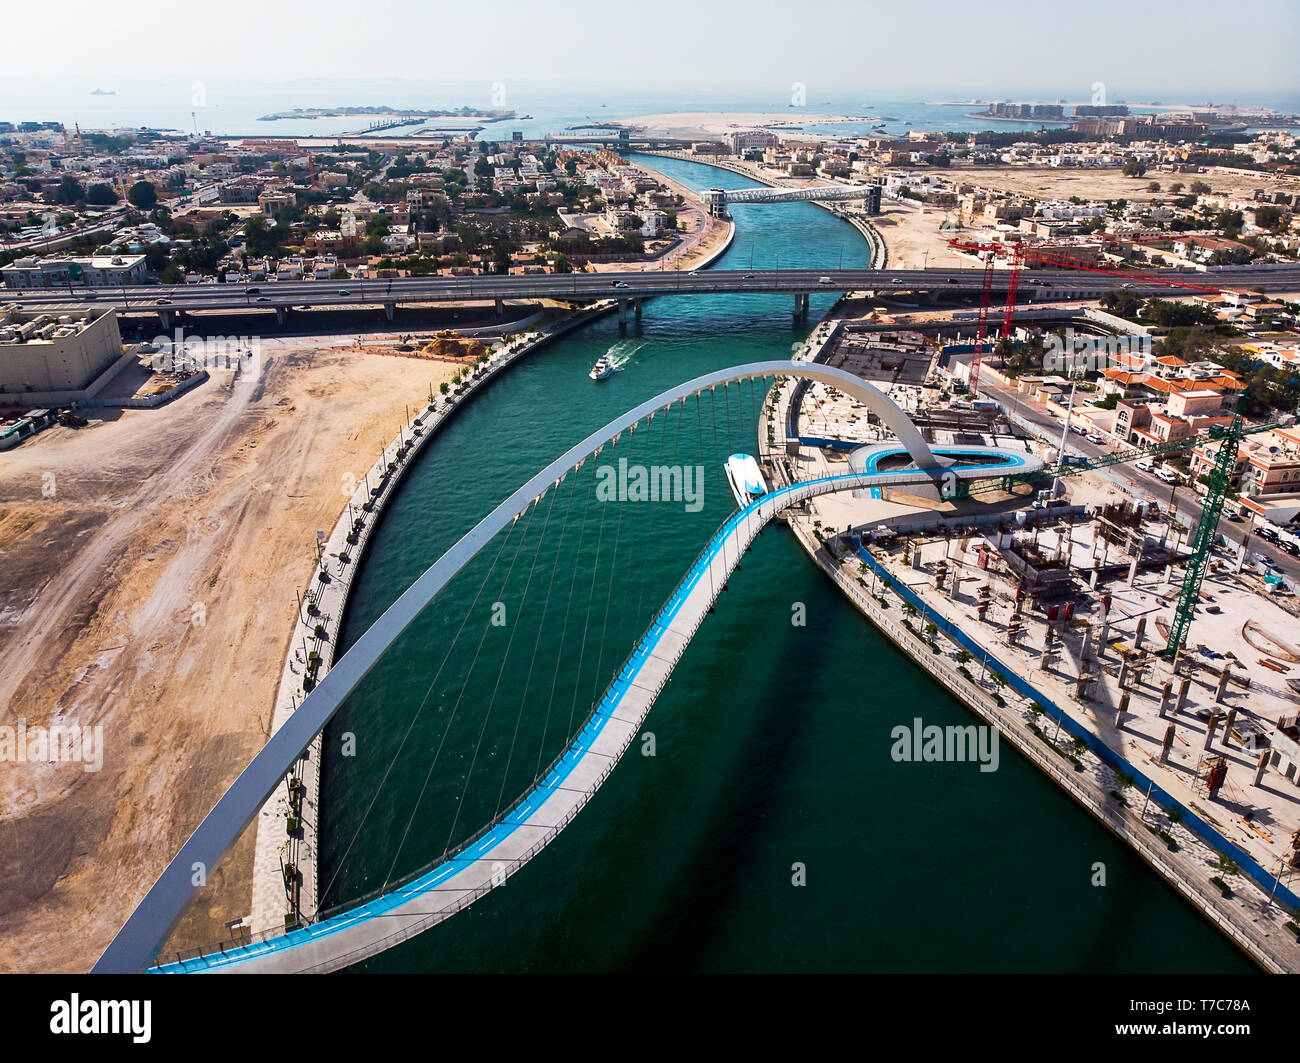 Ситуация в дубае сегодня с наводнением. Водный канал Дубая. Дубай Ватер канал. Creek canal Дубаи. Дубай канал Дубай ( Dubai Water canal).